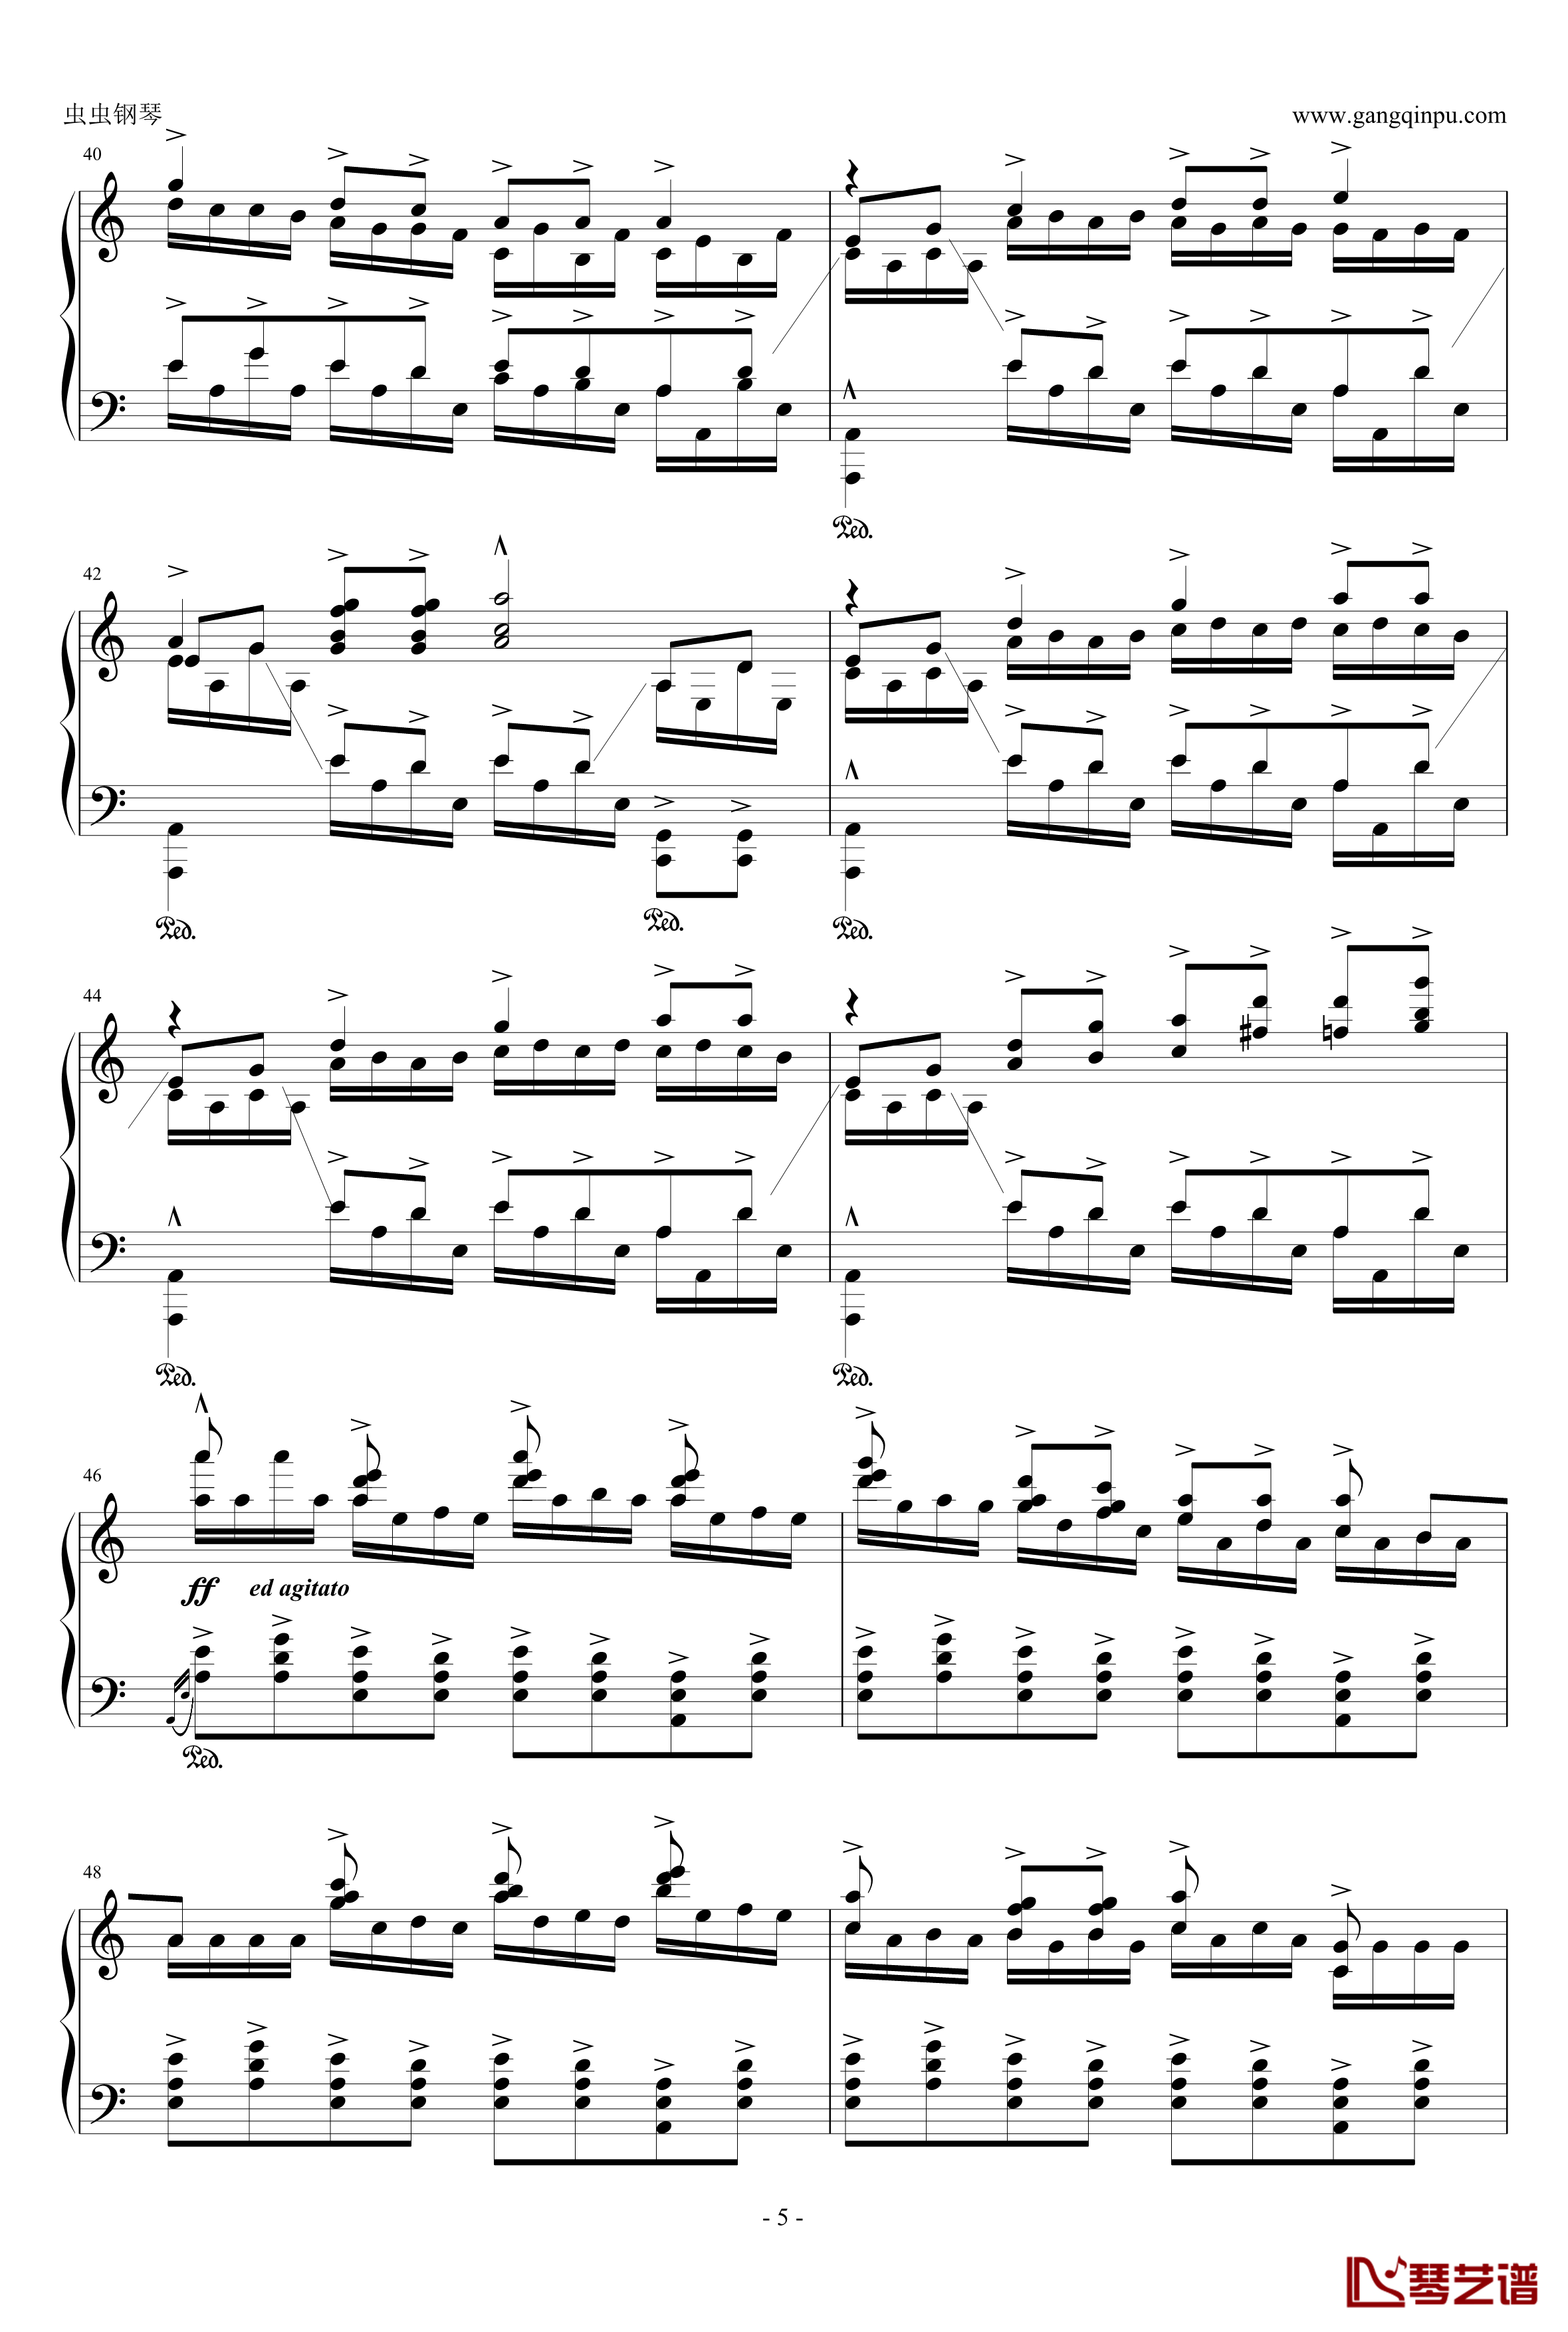 爪哇组曲钢琴谱-戈多夫斯基5